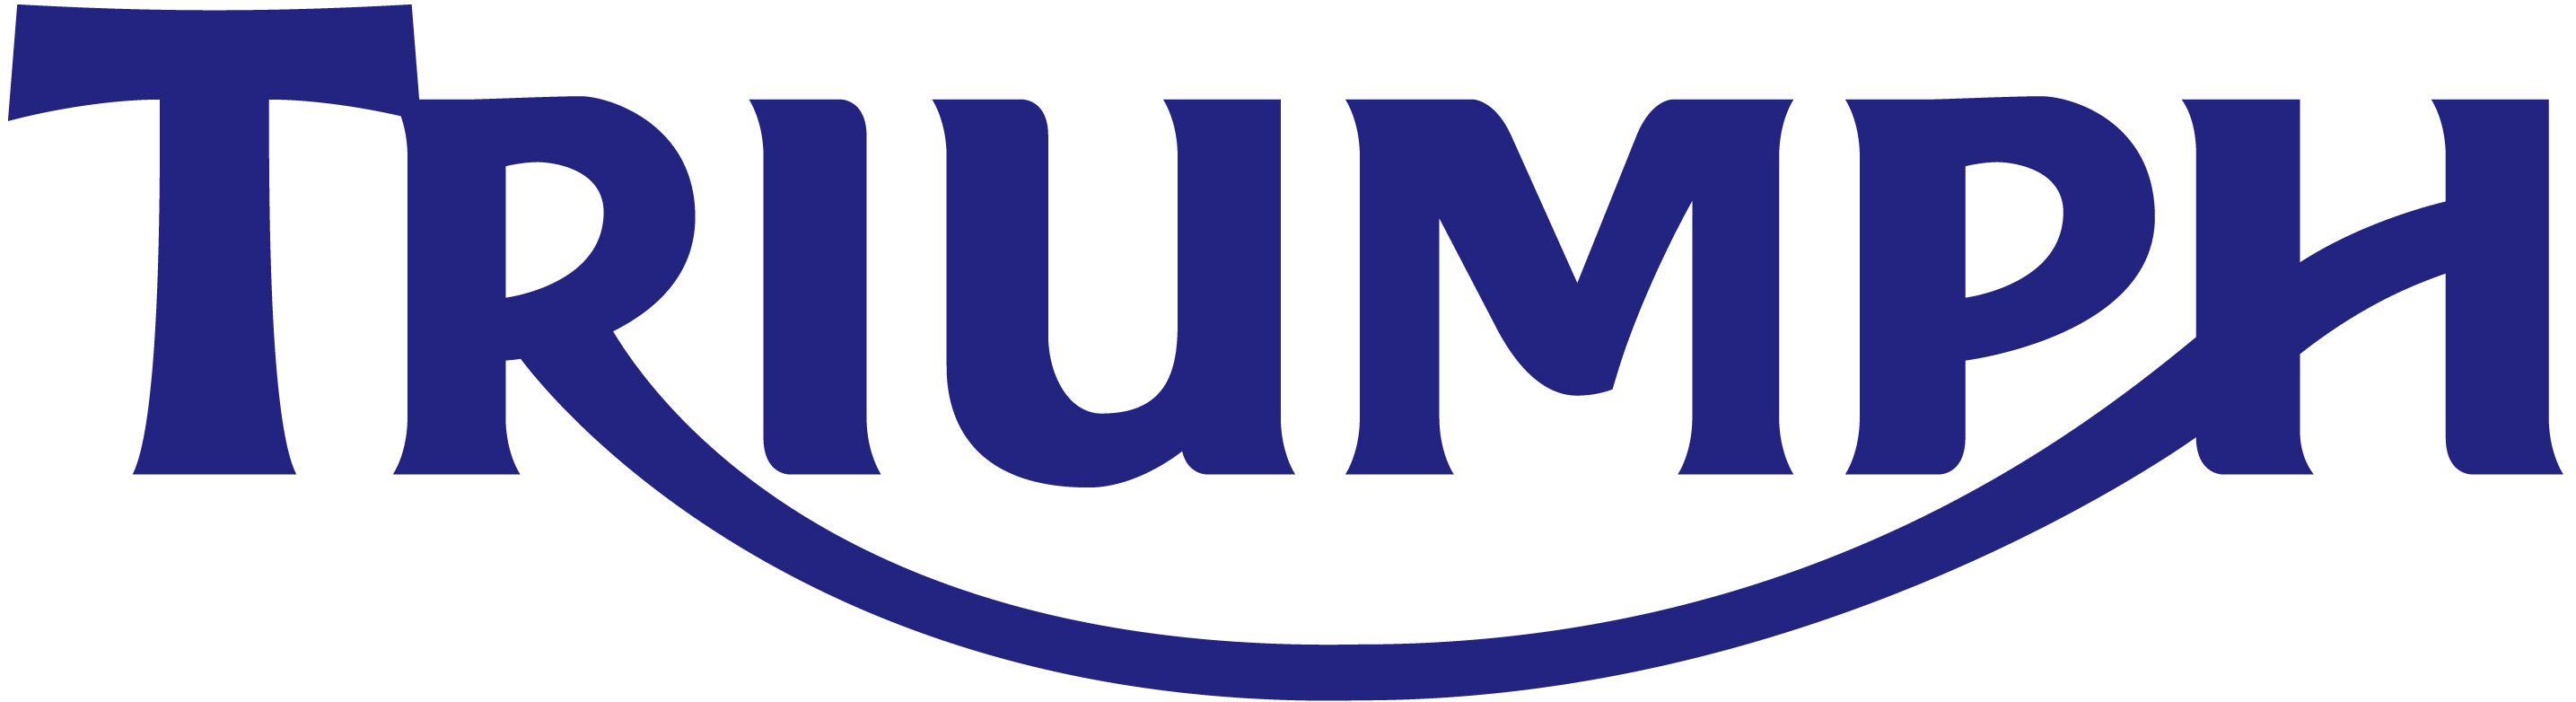 Triumph Automotive Logo - Triumph Motorcycles | Logo Design | Triumph motorcycles, Triumph ...